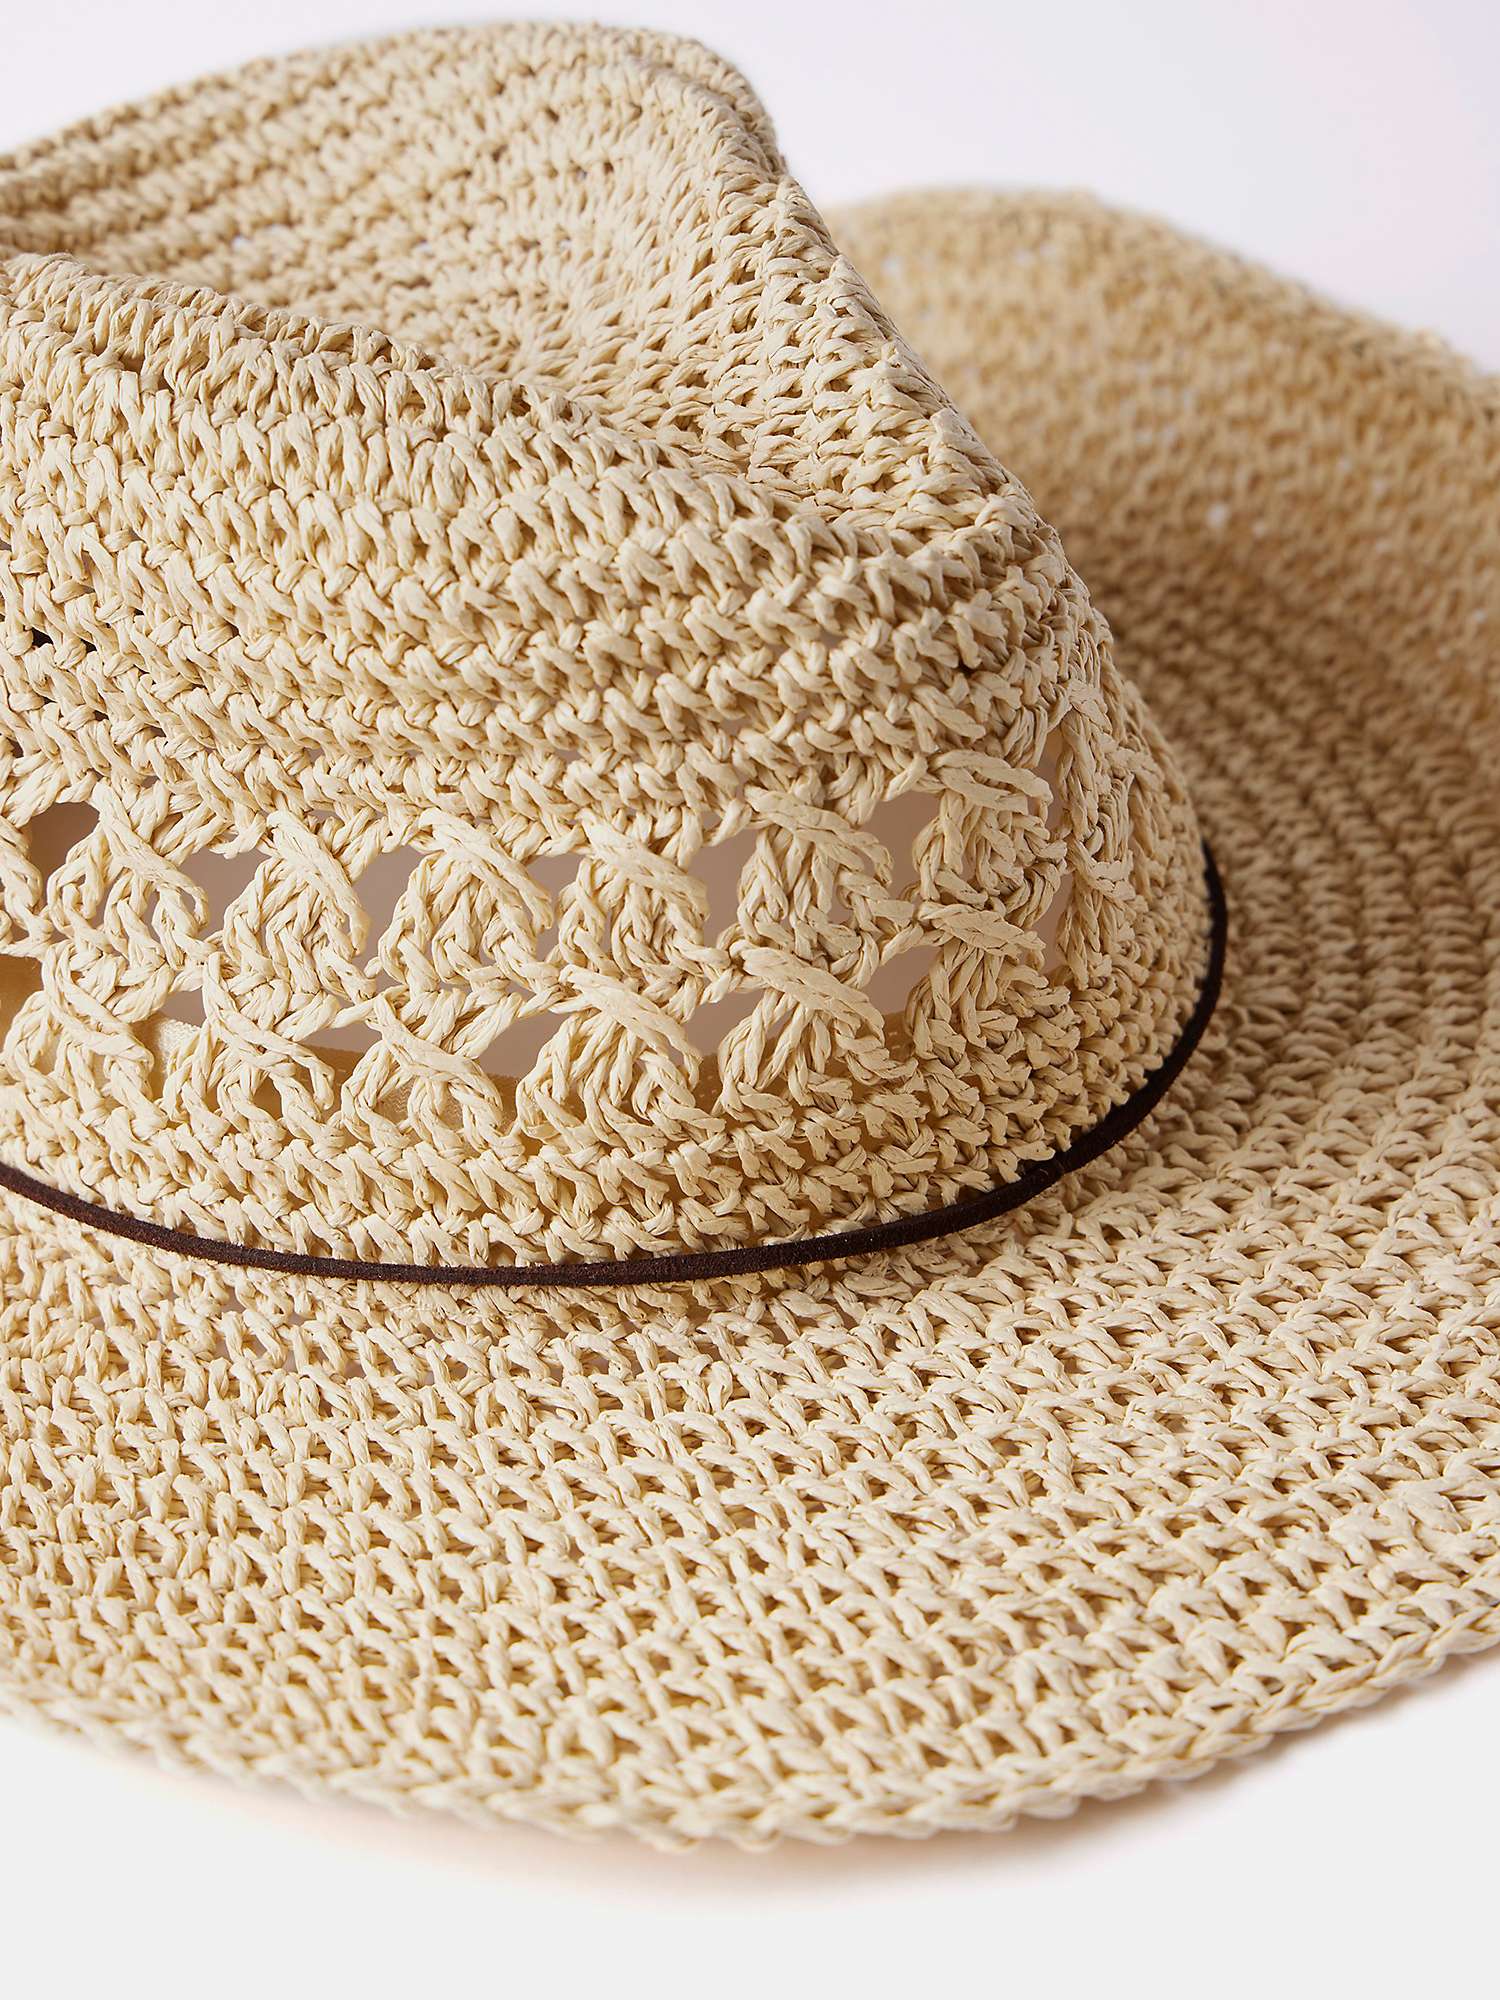 Buy Mint Velvet Straw Cowboy Hat, Natural Online at johnlewis.com